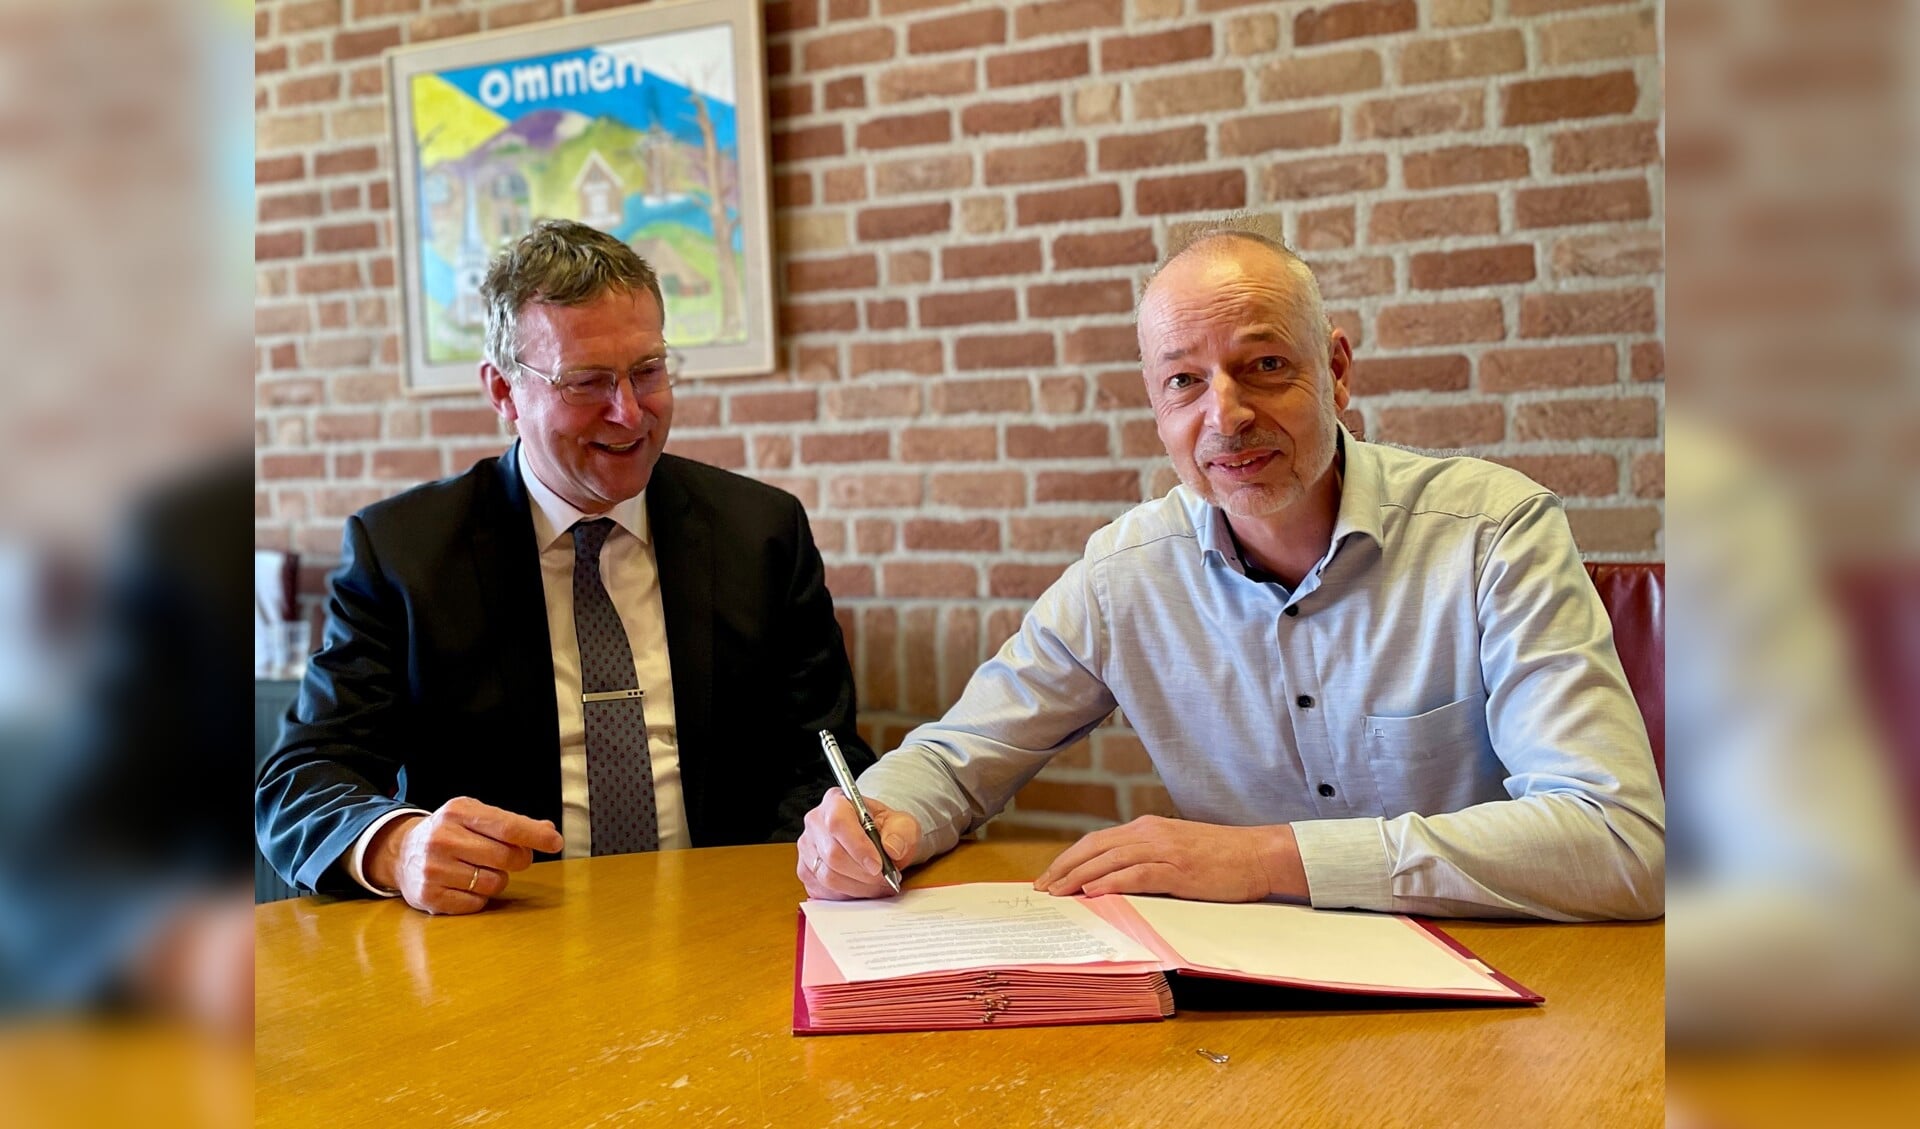 De nieuwe afspraken worden ondertekend door Rob Houthooft (algemeen directeur Larcom), in het bijzijn van wethouder Bart Jaspers Faijer.